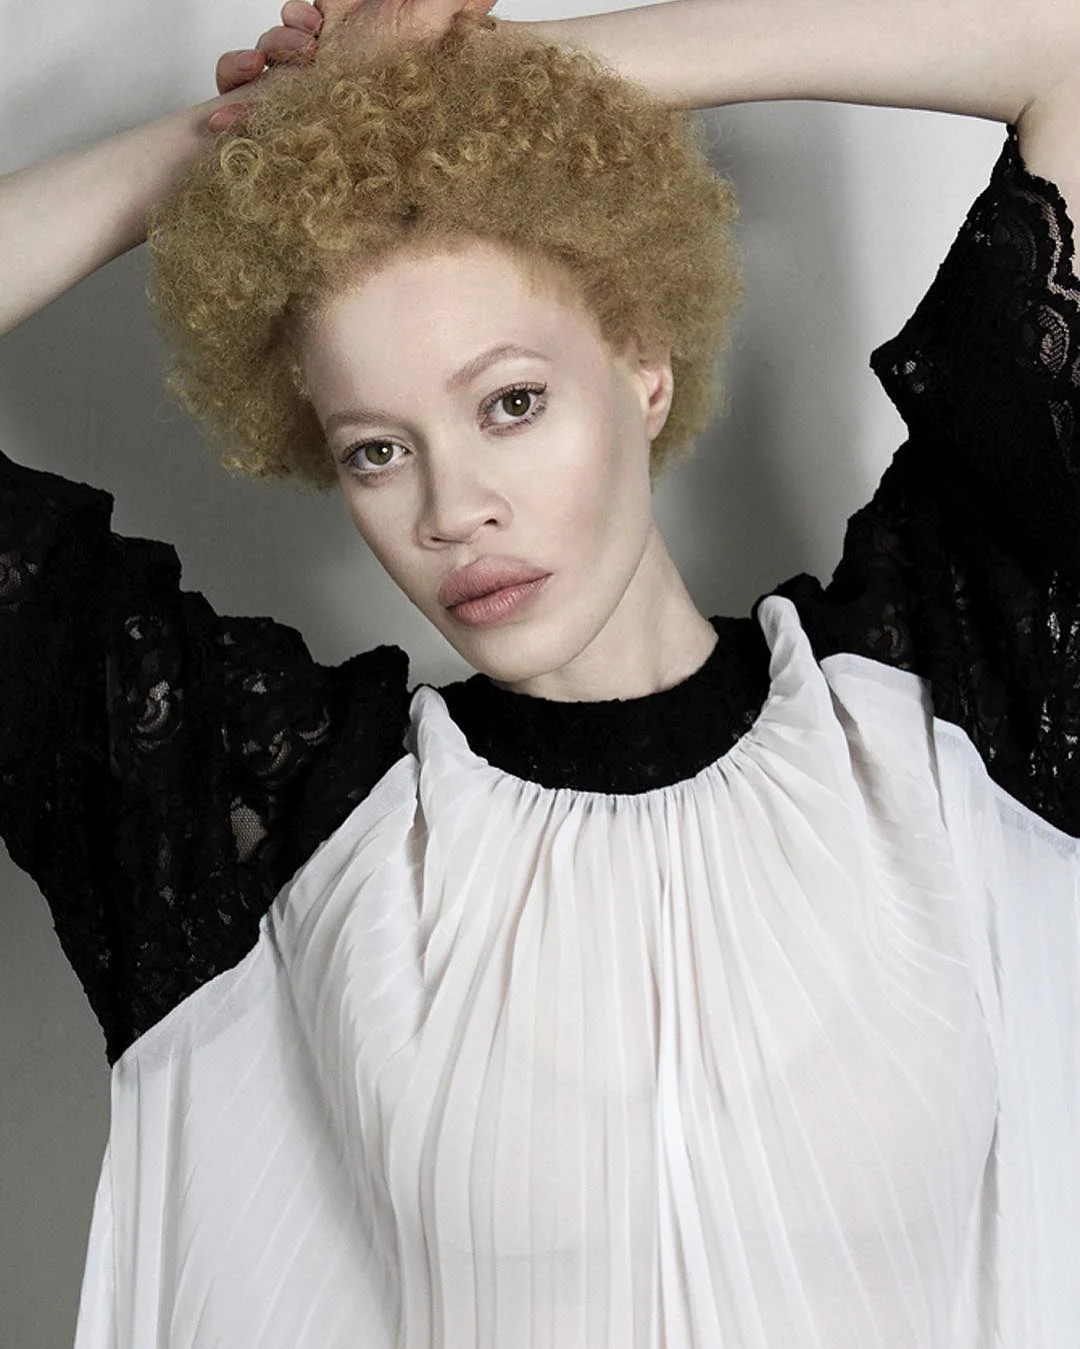 Африканская девушка-альбинос наделала шума в мире моды - фото 332843